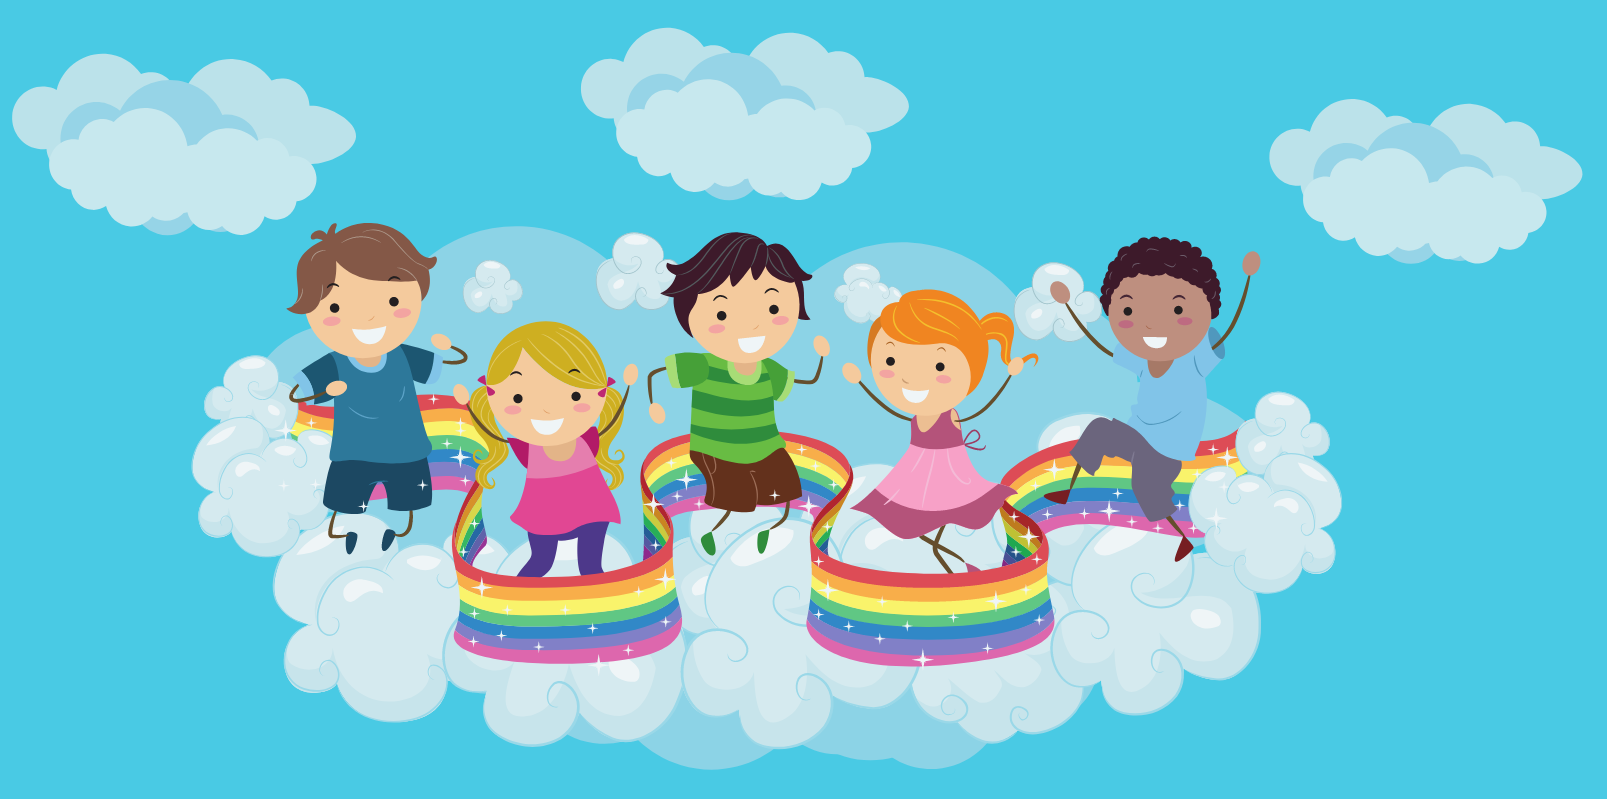 Grafika przedstawia dzieci wśród chmurek, tańczące wokół tęczy.